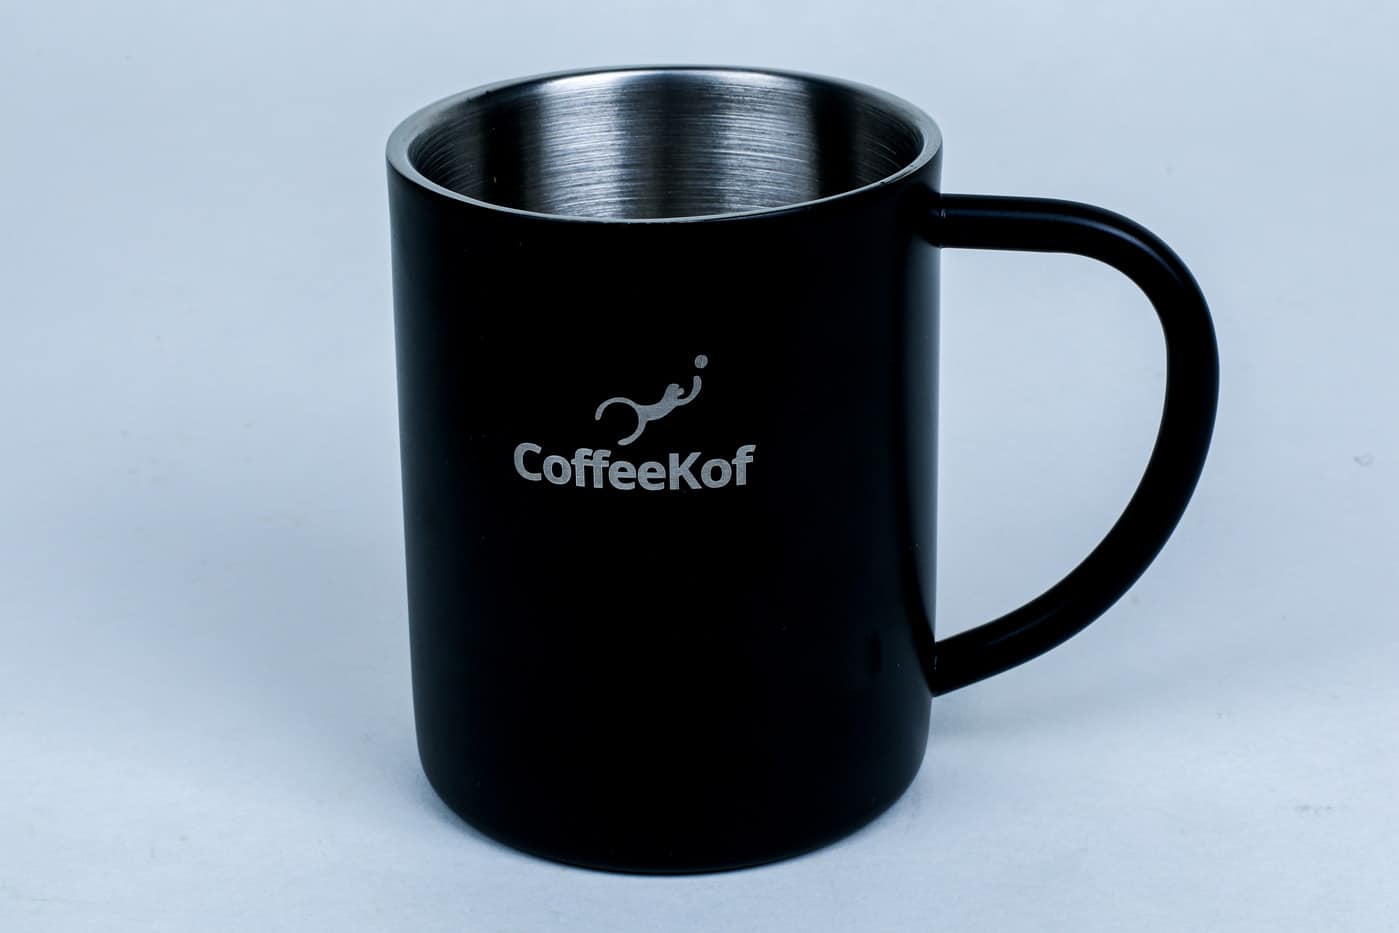 https://greenspoon.co.ke/wp-content/uploads/2023/09/Greenspoon-CoffeeKof-Stainless-Steel-Coffee-Mug.jpg